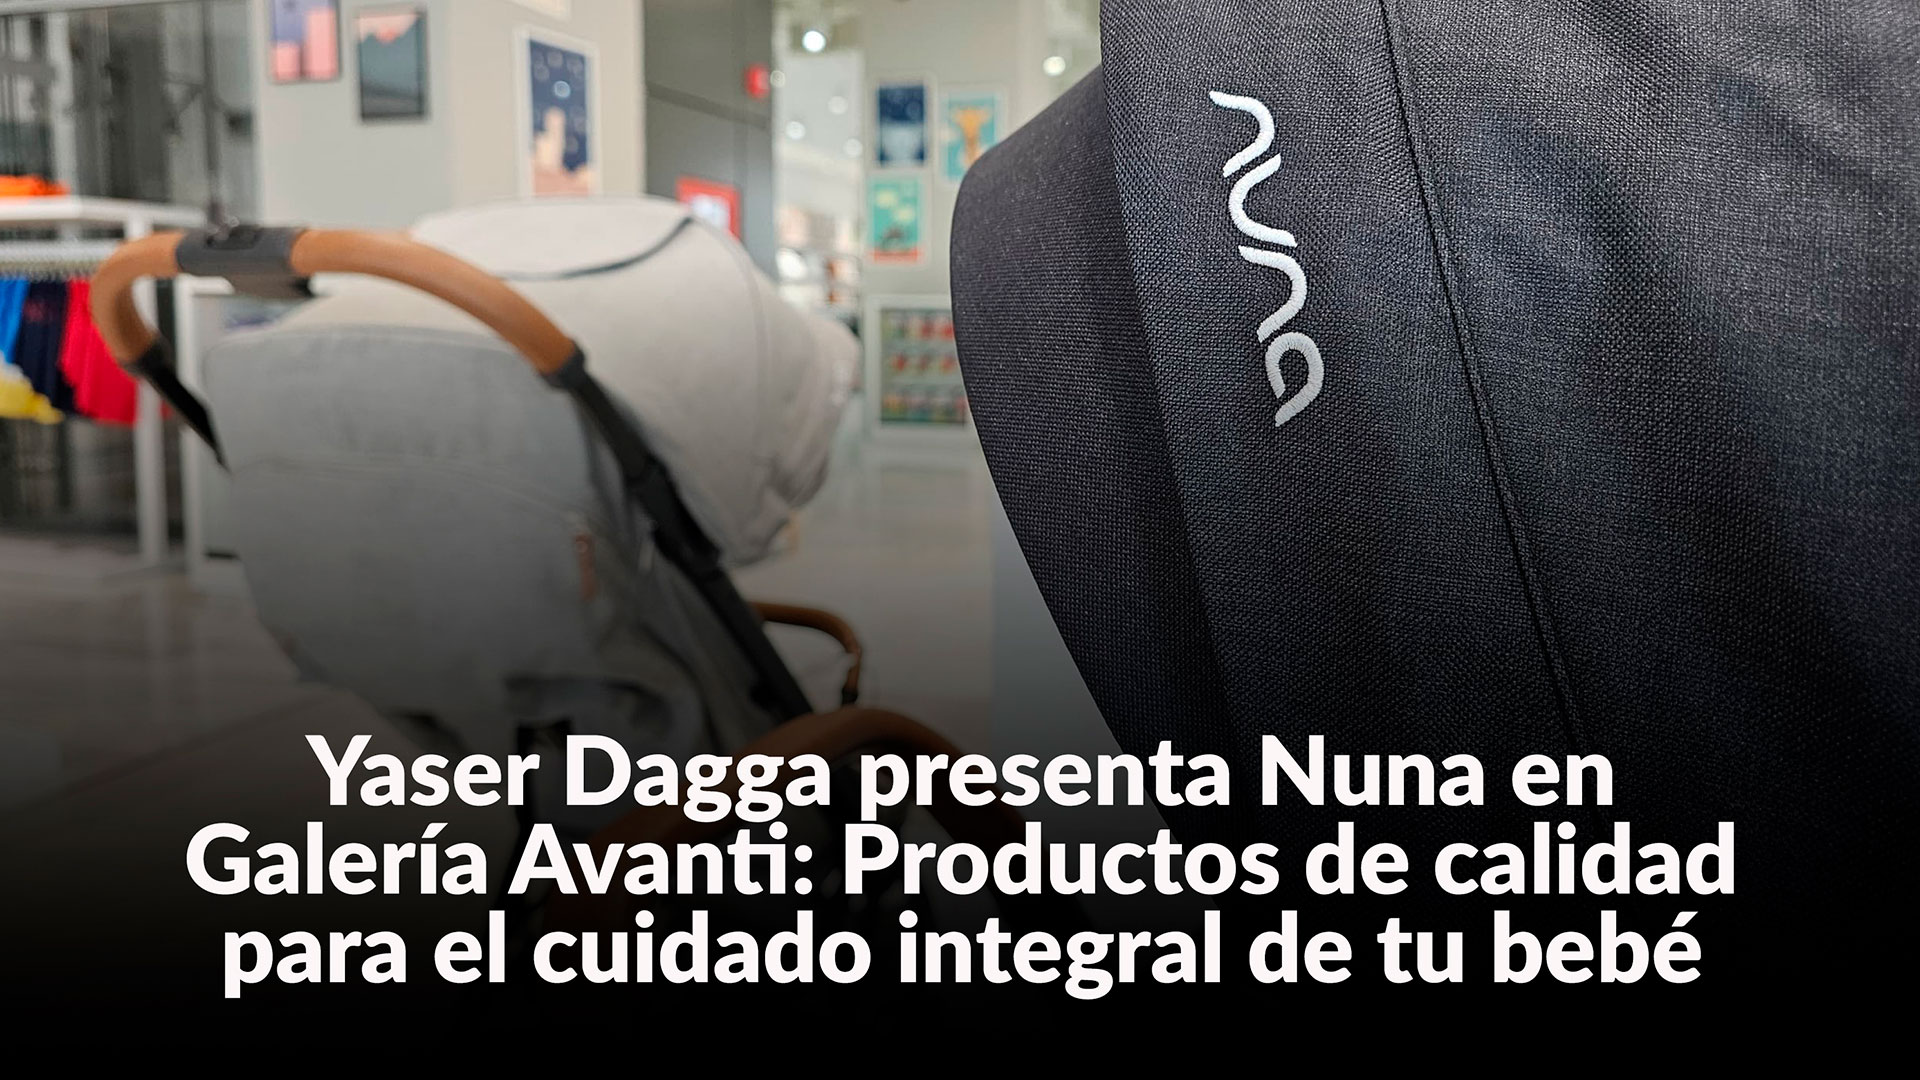 Yaser Dagga presenta Nuna en Galería Avanti: Productos de calidad para el cuidado integral de tu bebé